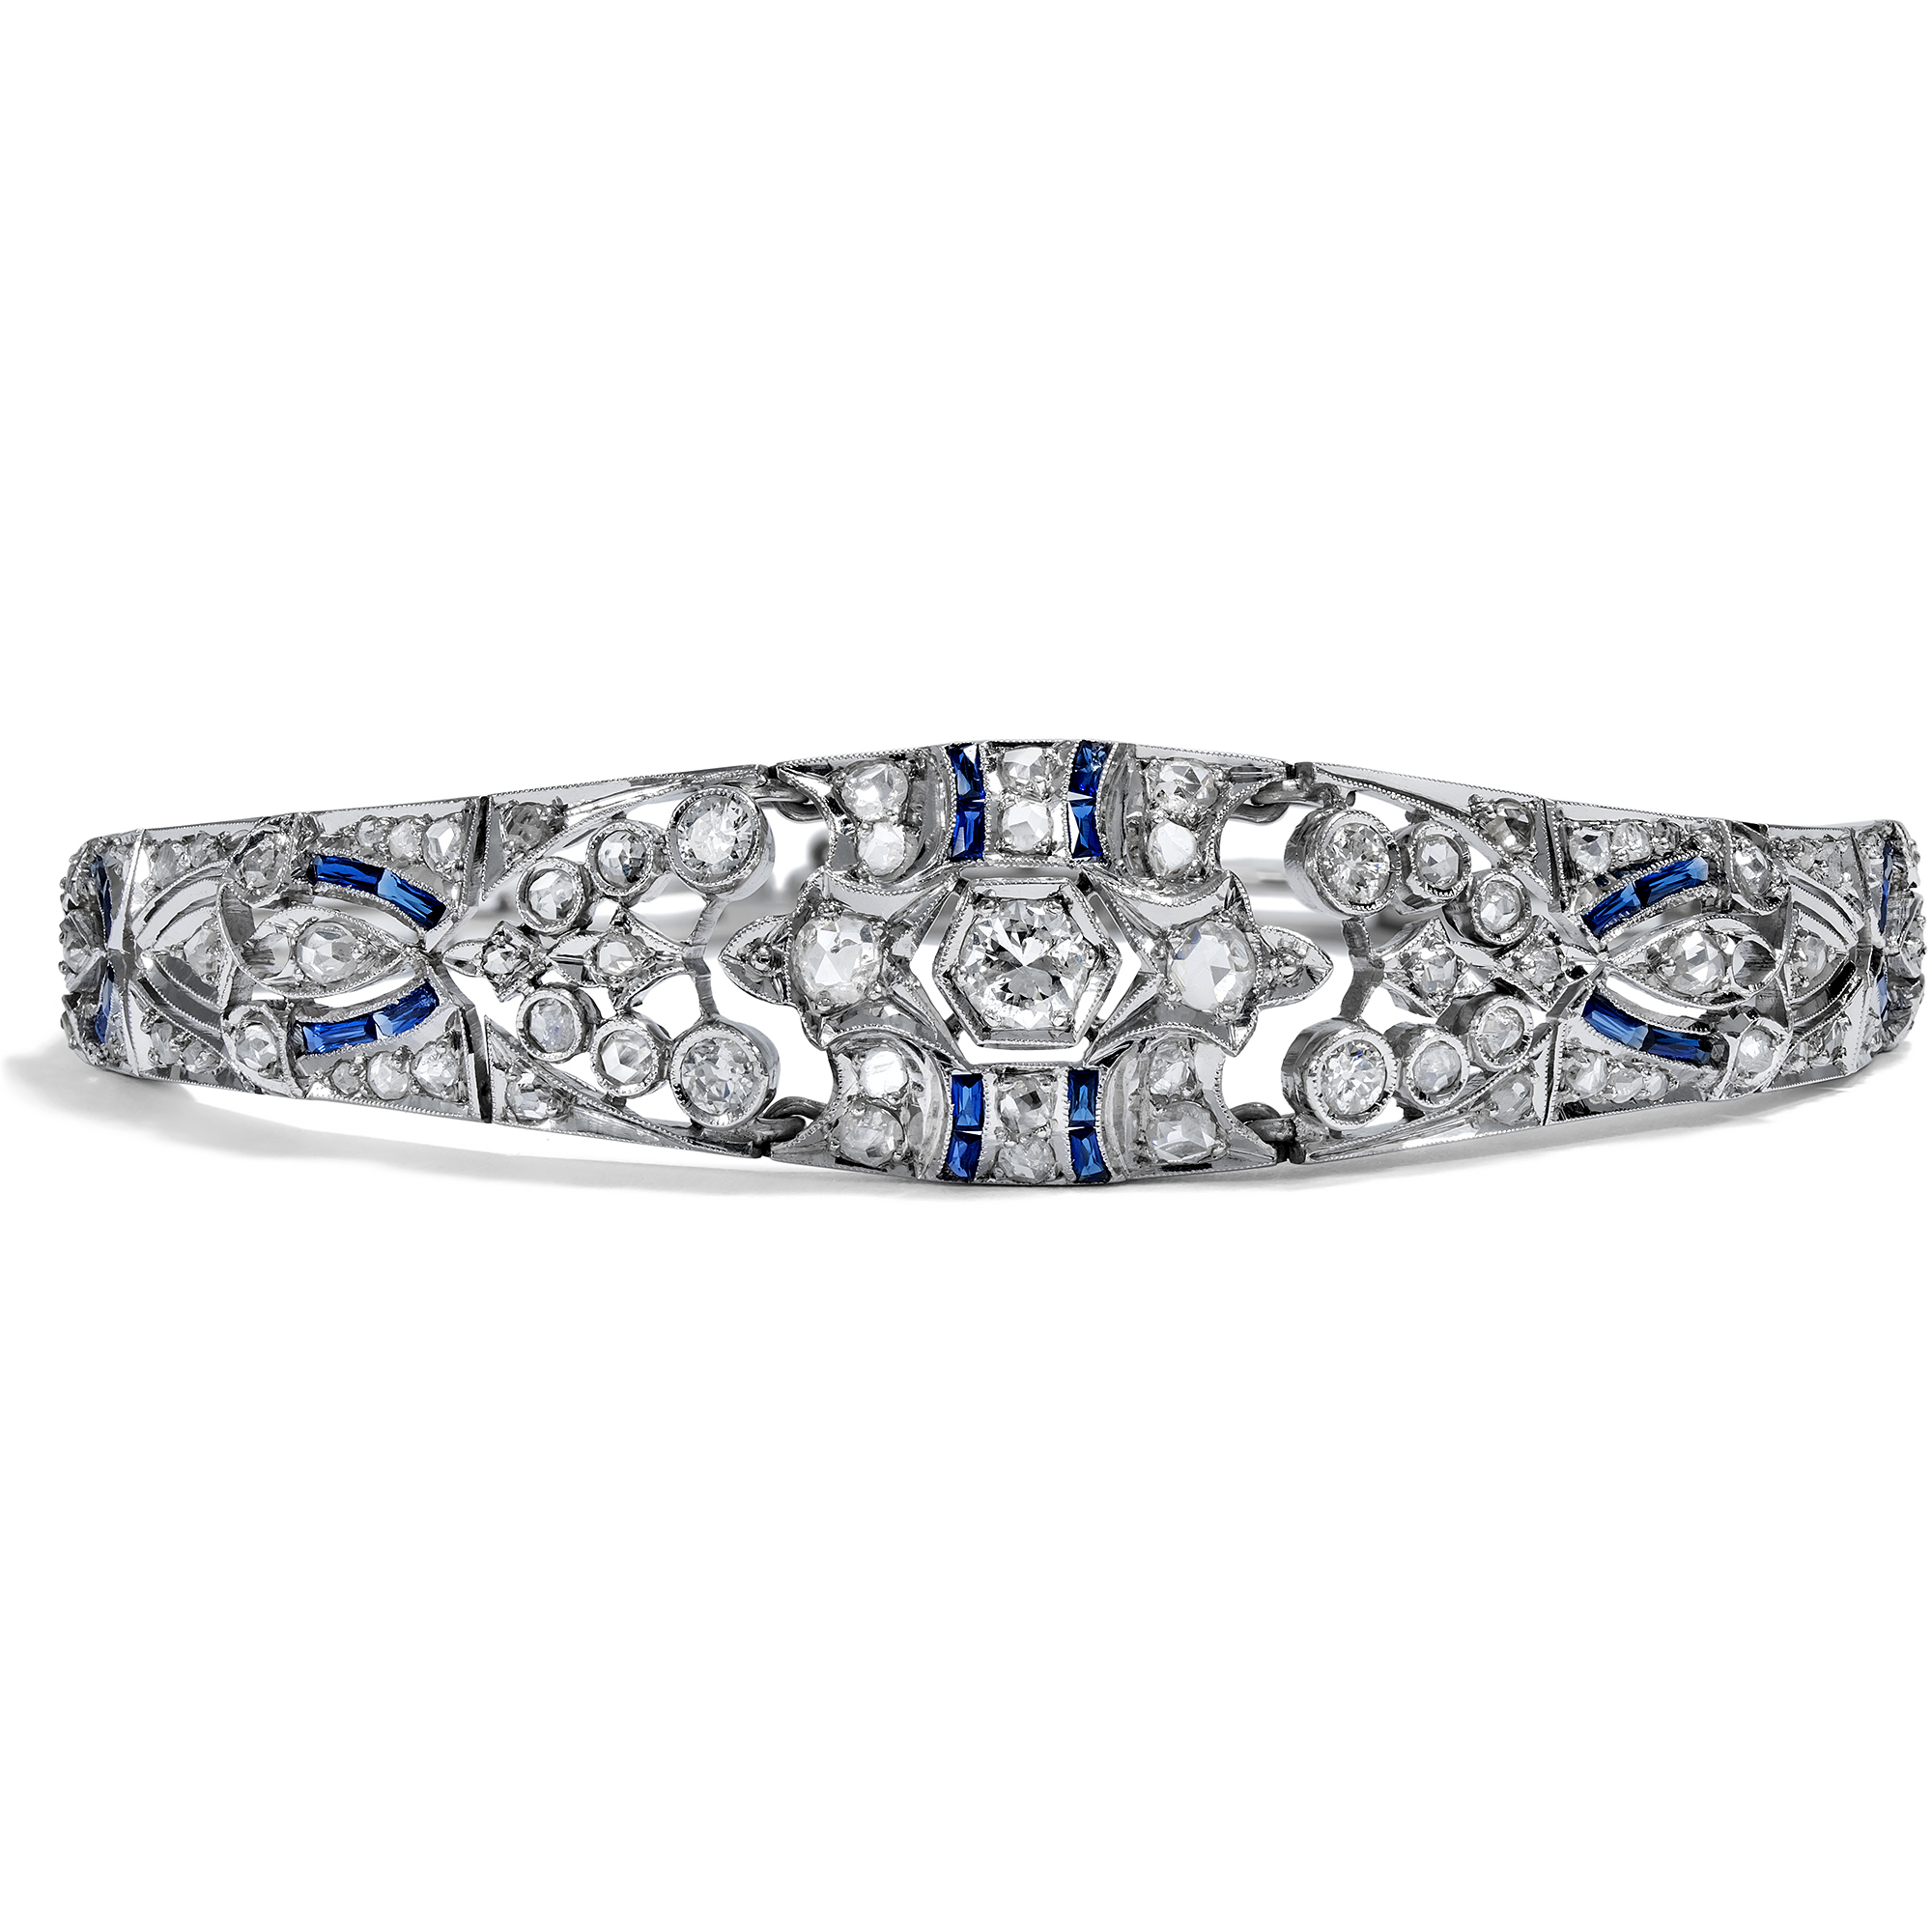 Elegant Belle Époque Silver Bracelet with Diamonds, c. 1915